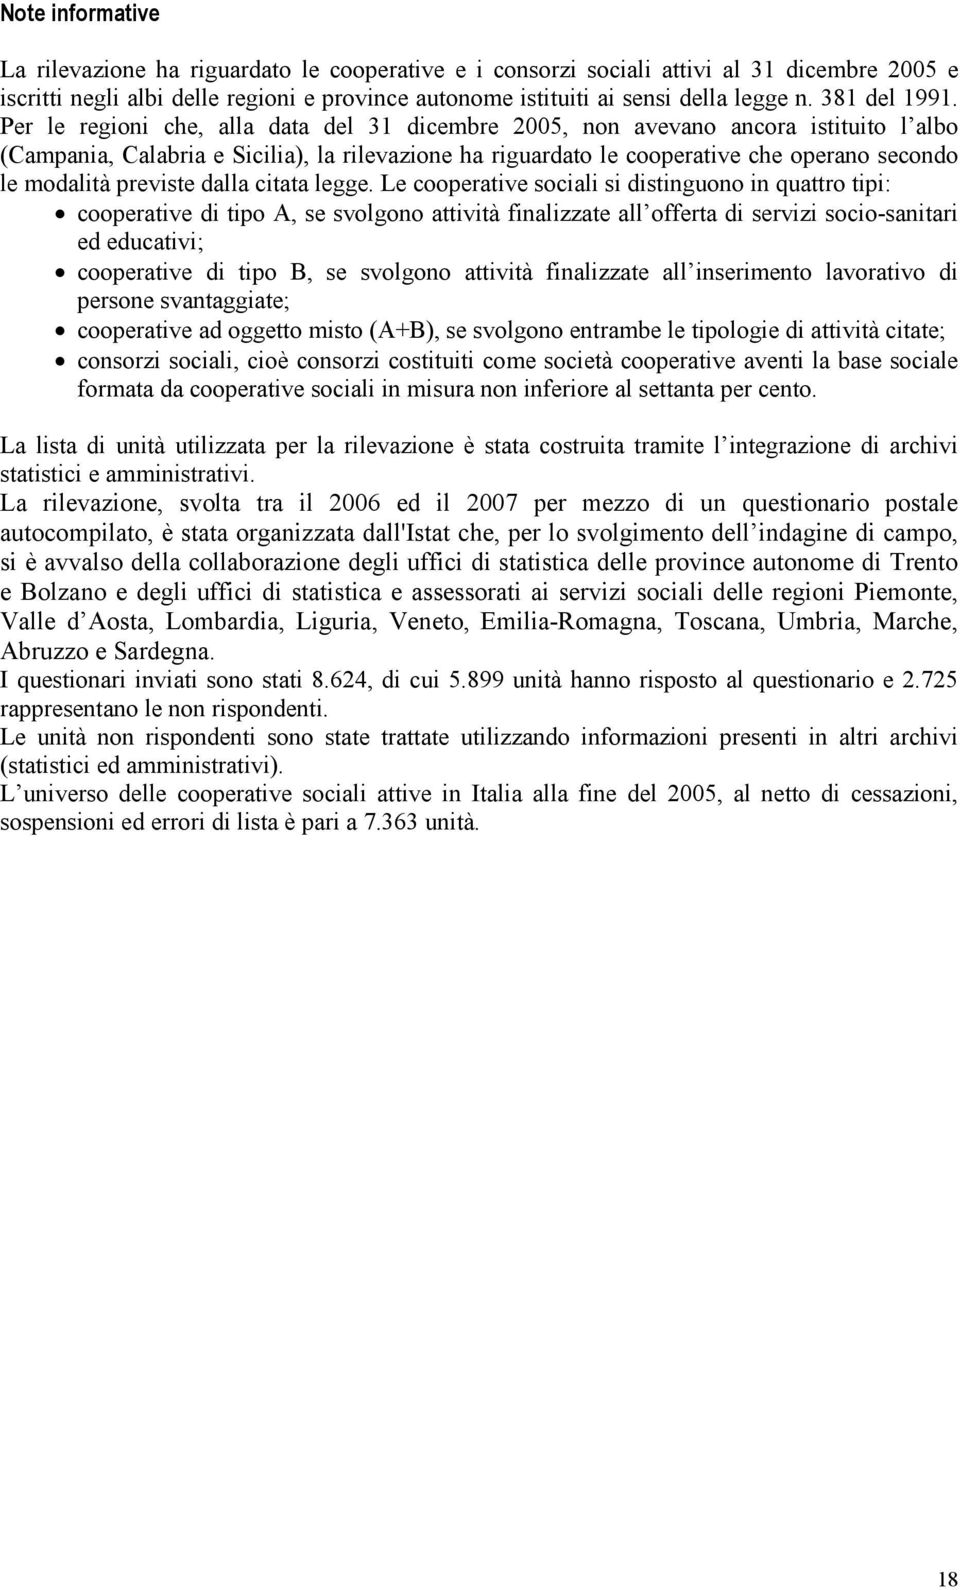 Per le regioni che, alla data del 31 dicembre 2005, non avevano ancora istituito l albo (Campania, Calabria e Sicilia), la rilevazione ha riguardato le cooperative che operano secondo le modalità